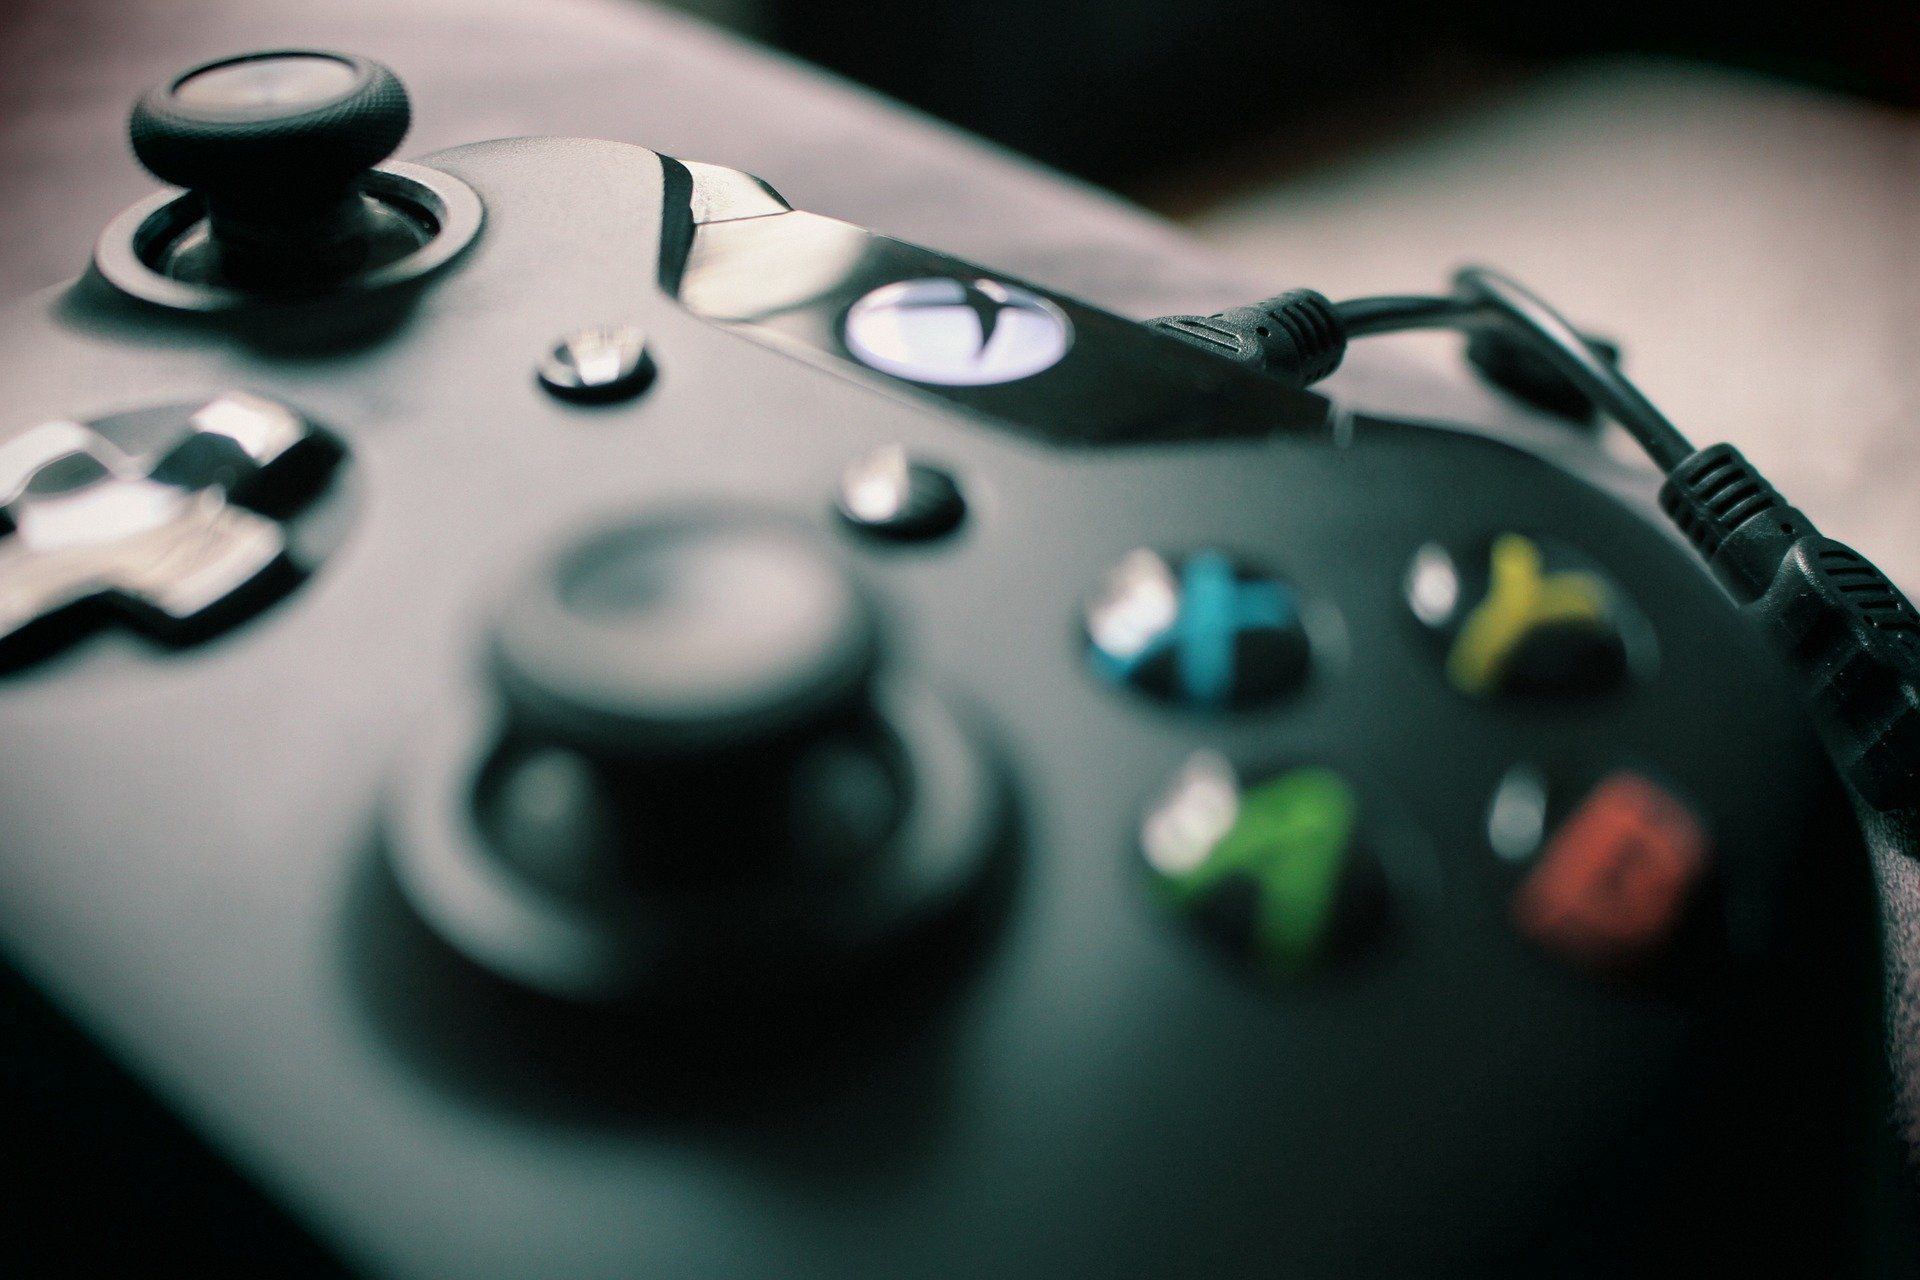 Les spécificités techniques de la Xbox Series X (XSX) dévoilée par Phil Spencer